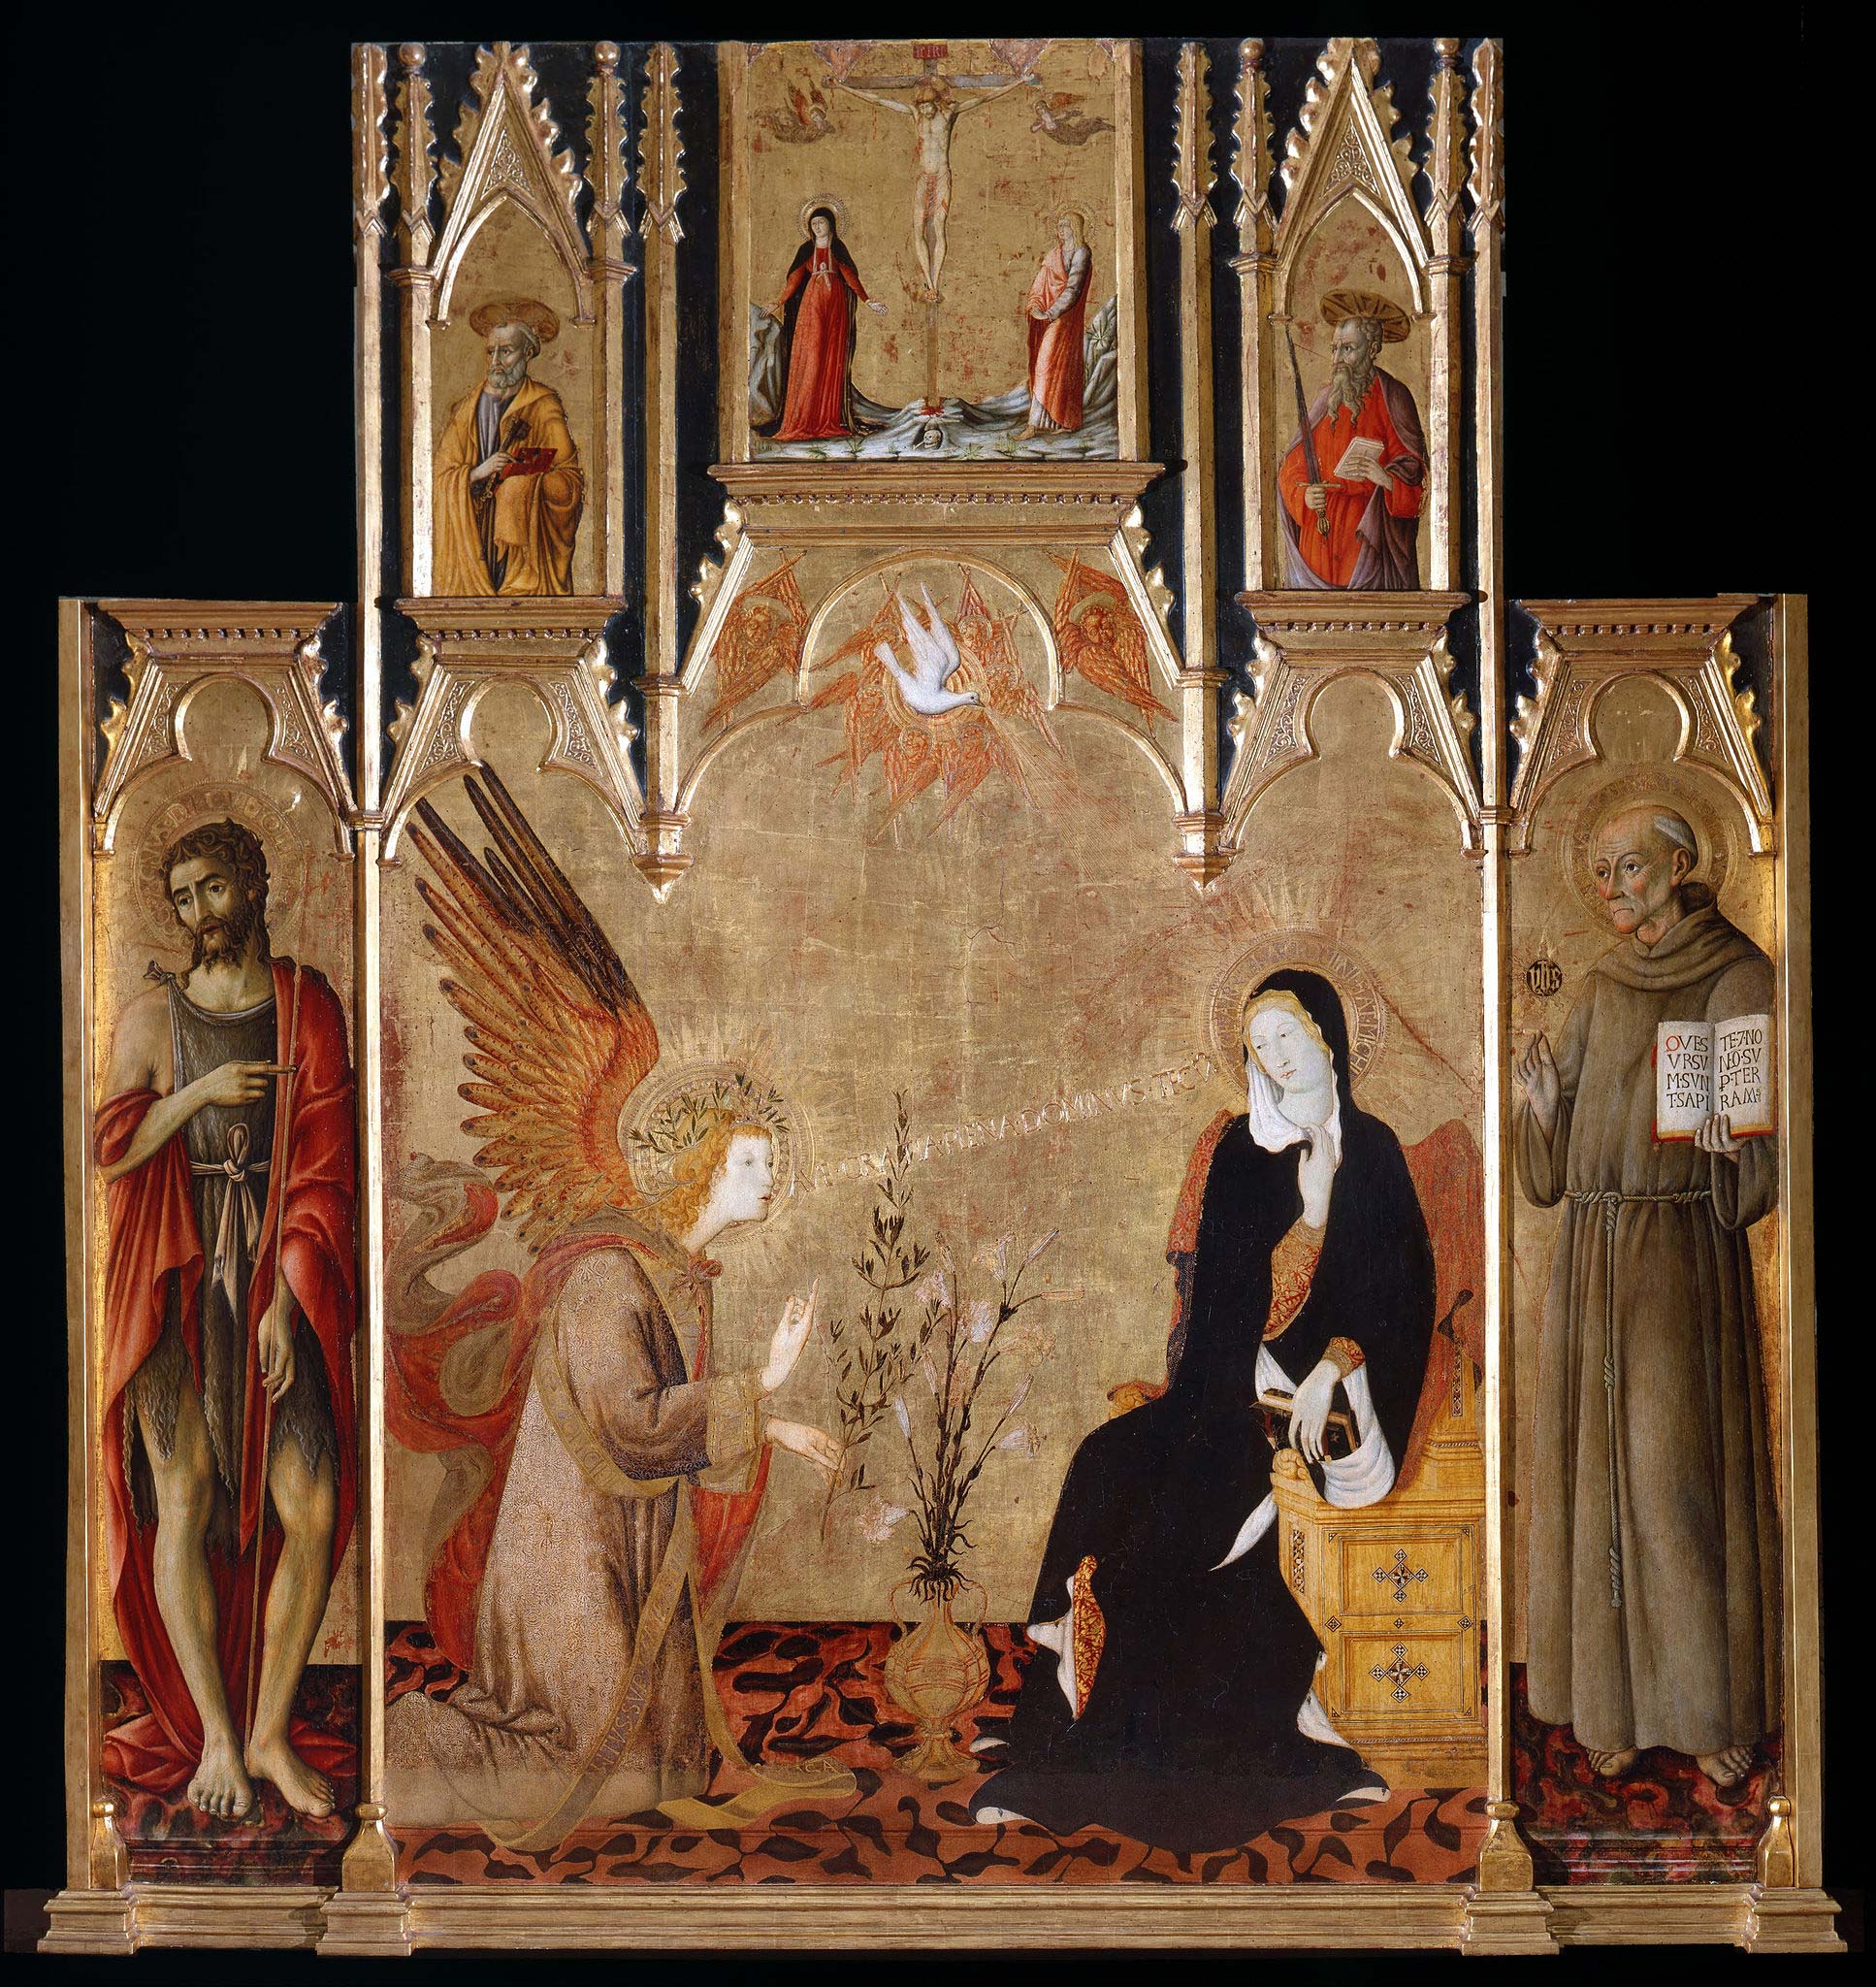 Giovanni di Pietro and Matteo di Giovanni, Annunciation with Saints John the Baptist and Bernardine (1450-1460; tempera on panel, 252 x 238 cm; Siena, Pinacoteca Nazionale)